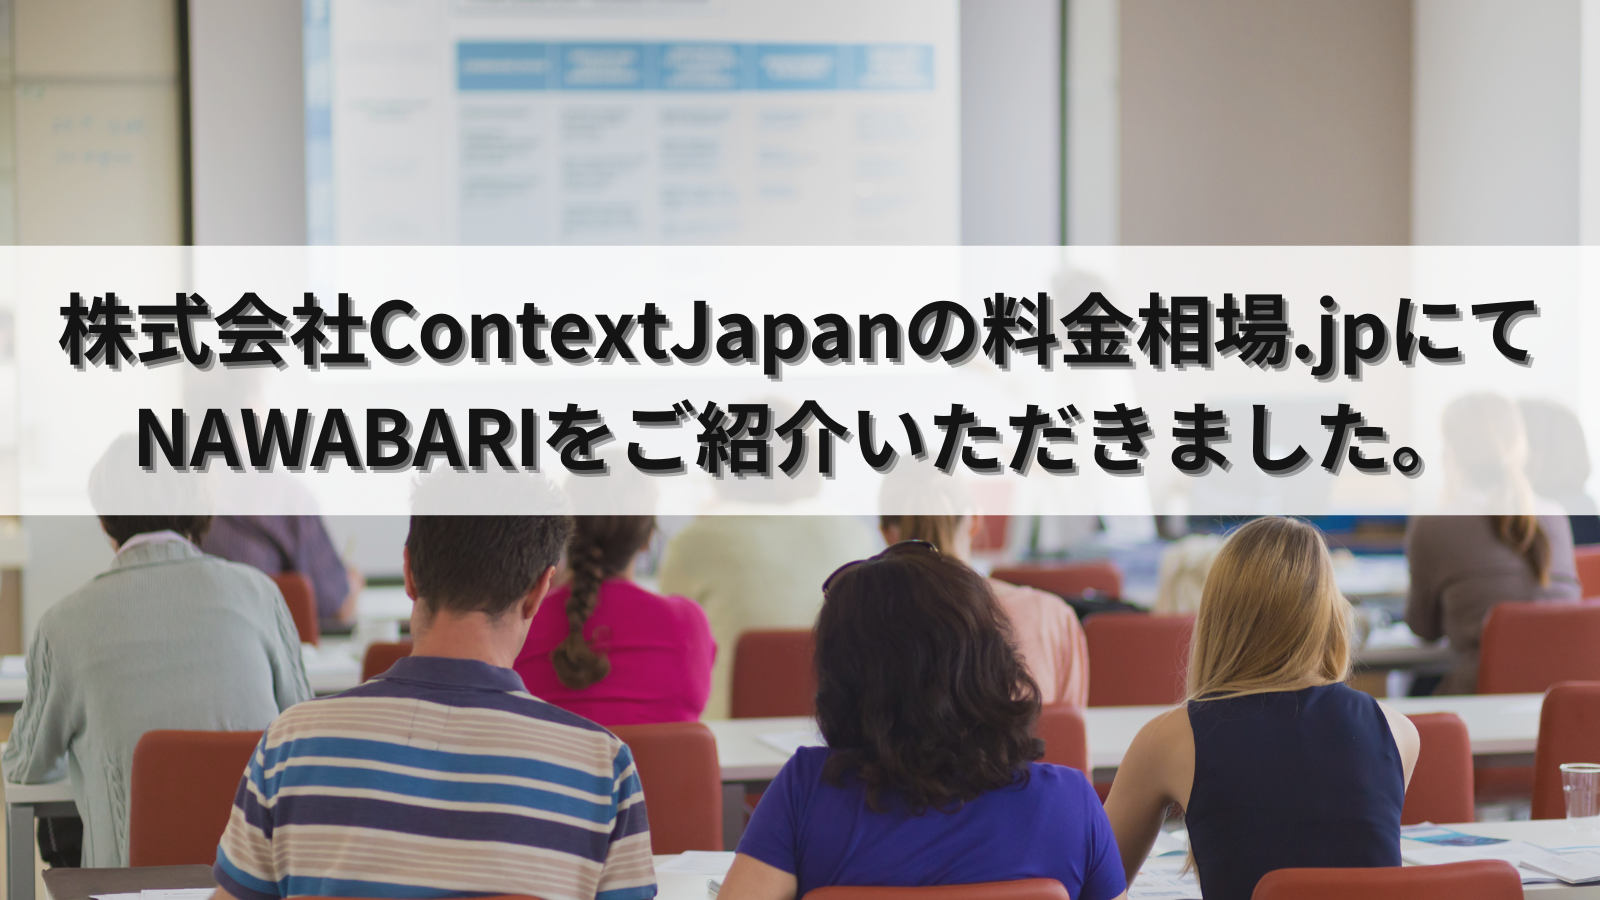 株式会社ContextJapanの運営するWebメディア「料金相場.jp」にてNAWABARIが紹介されました。